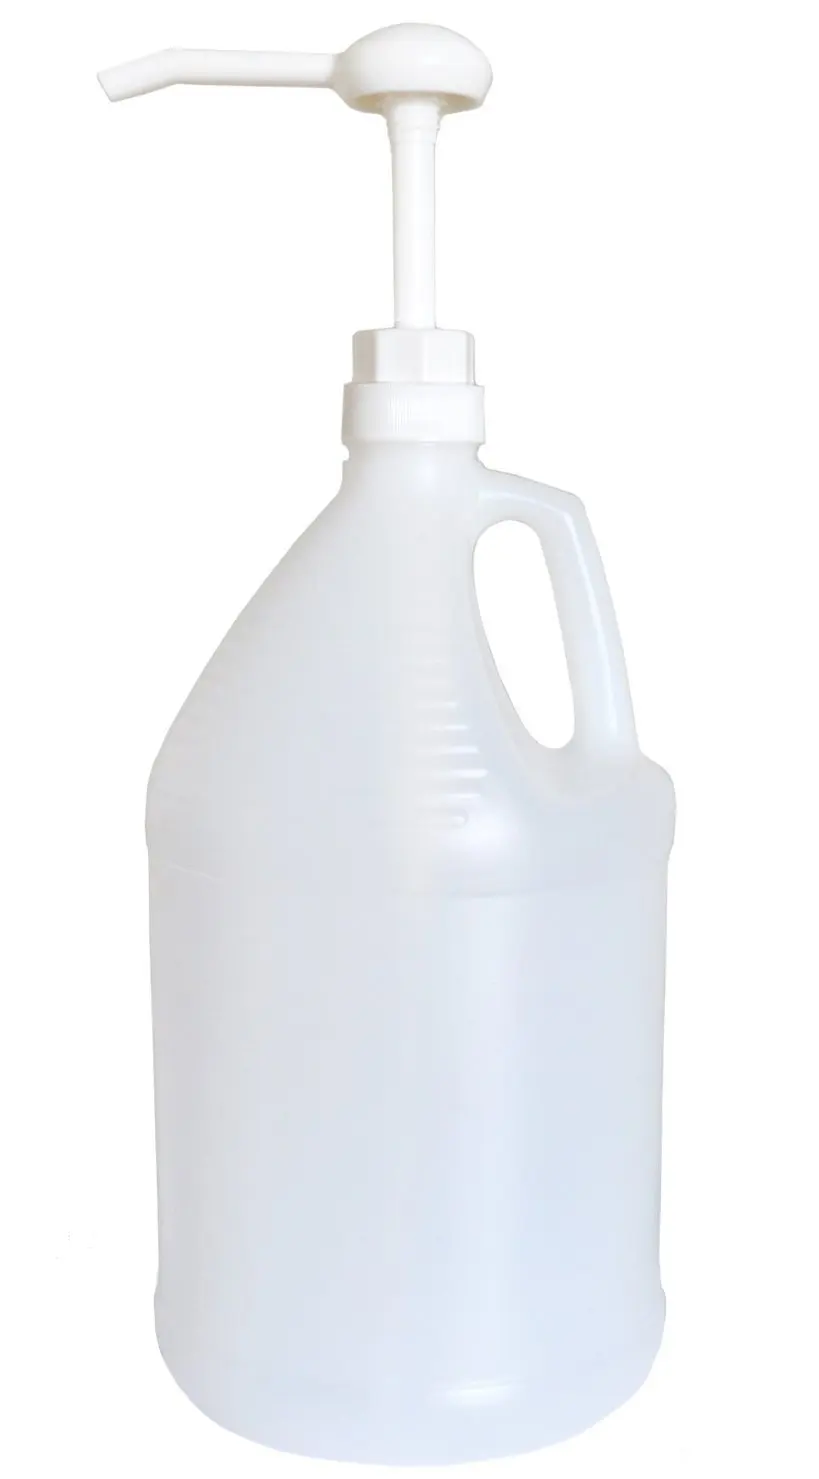 38/415,38/410,38/400 Plastic 1oz Reusable beverages juice 38mm gallon dispenser pump